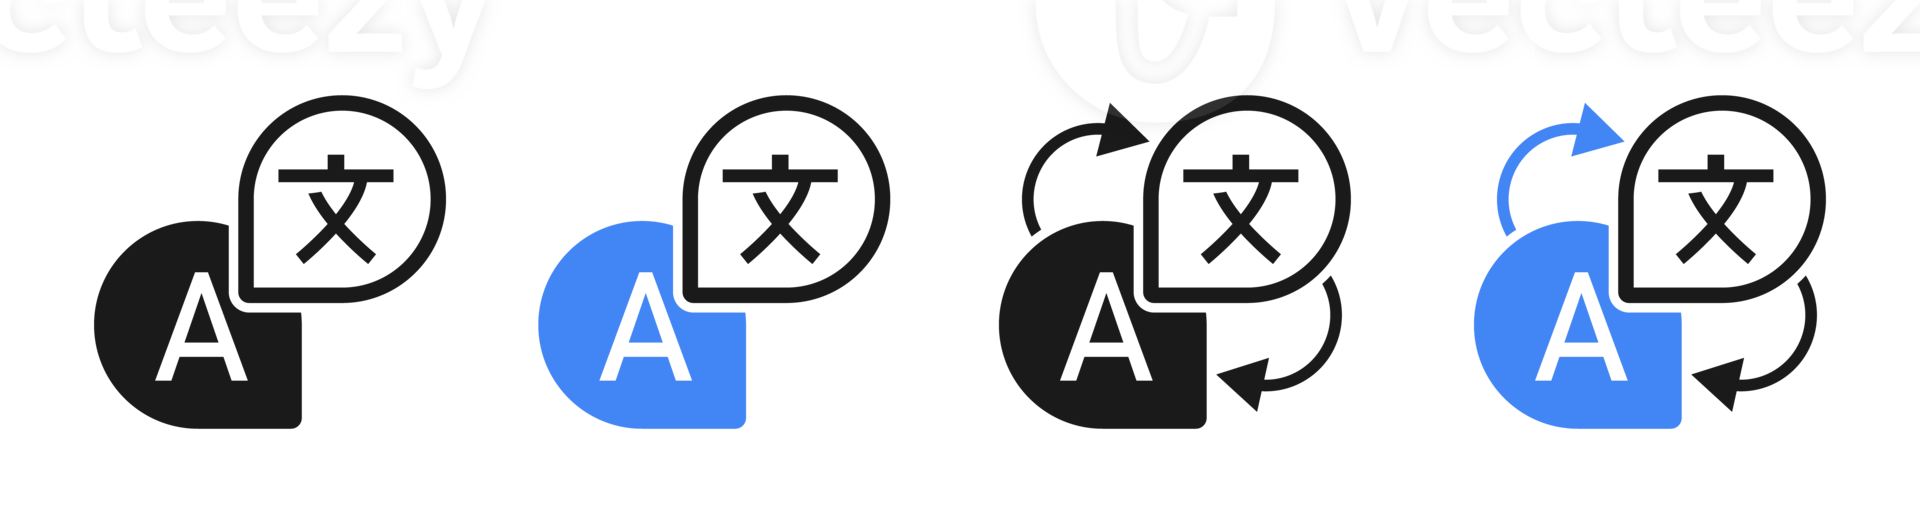 Translate Icons Set. Language Translation Symbols Concept. Black And Blue Illustration Png. png